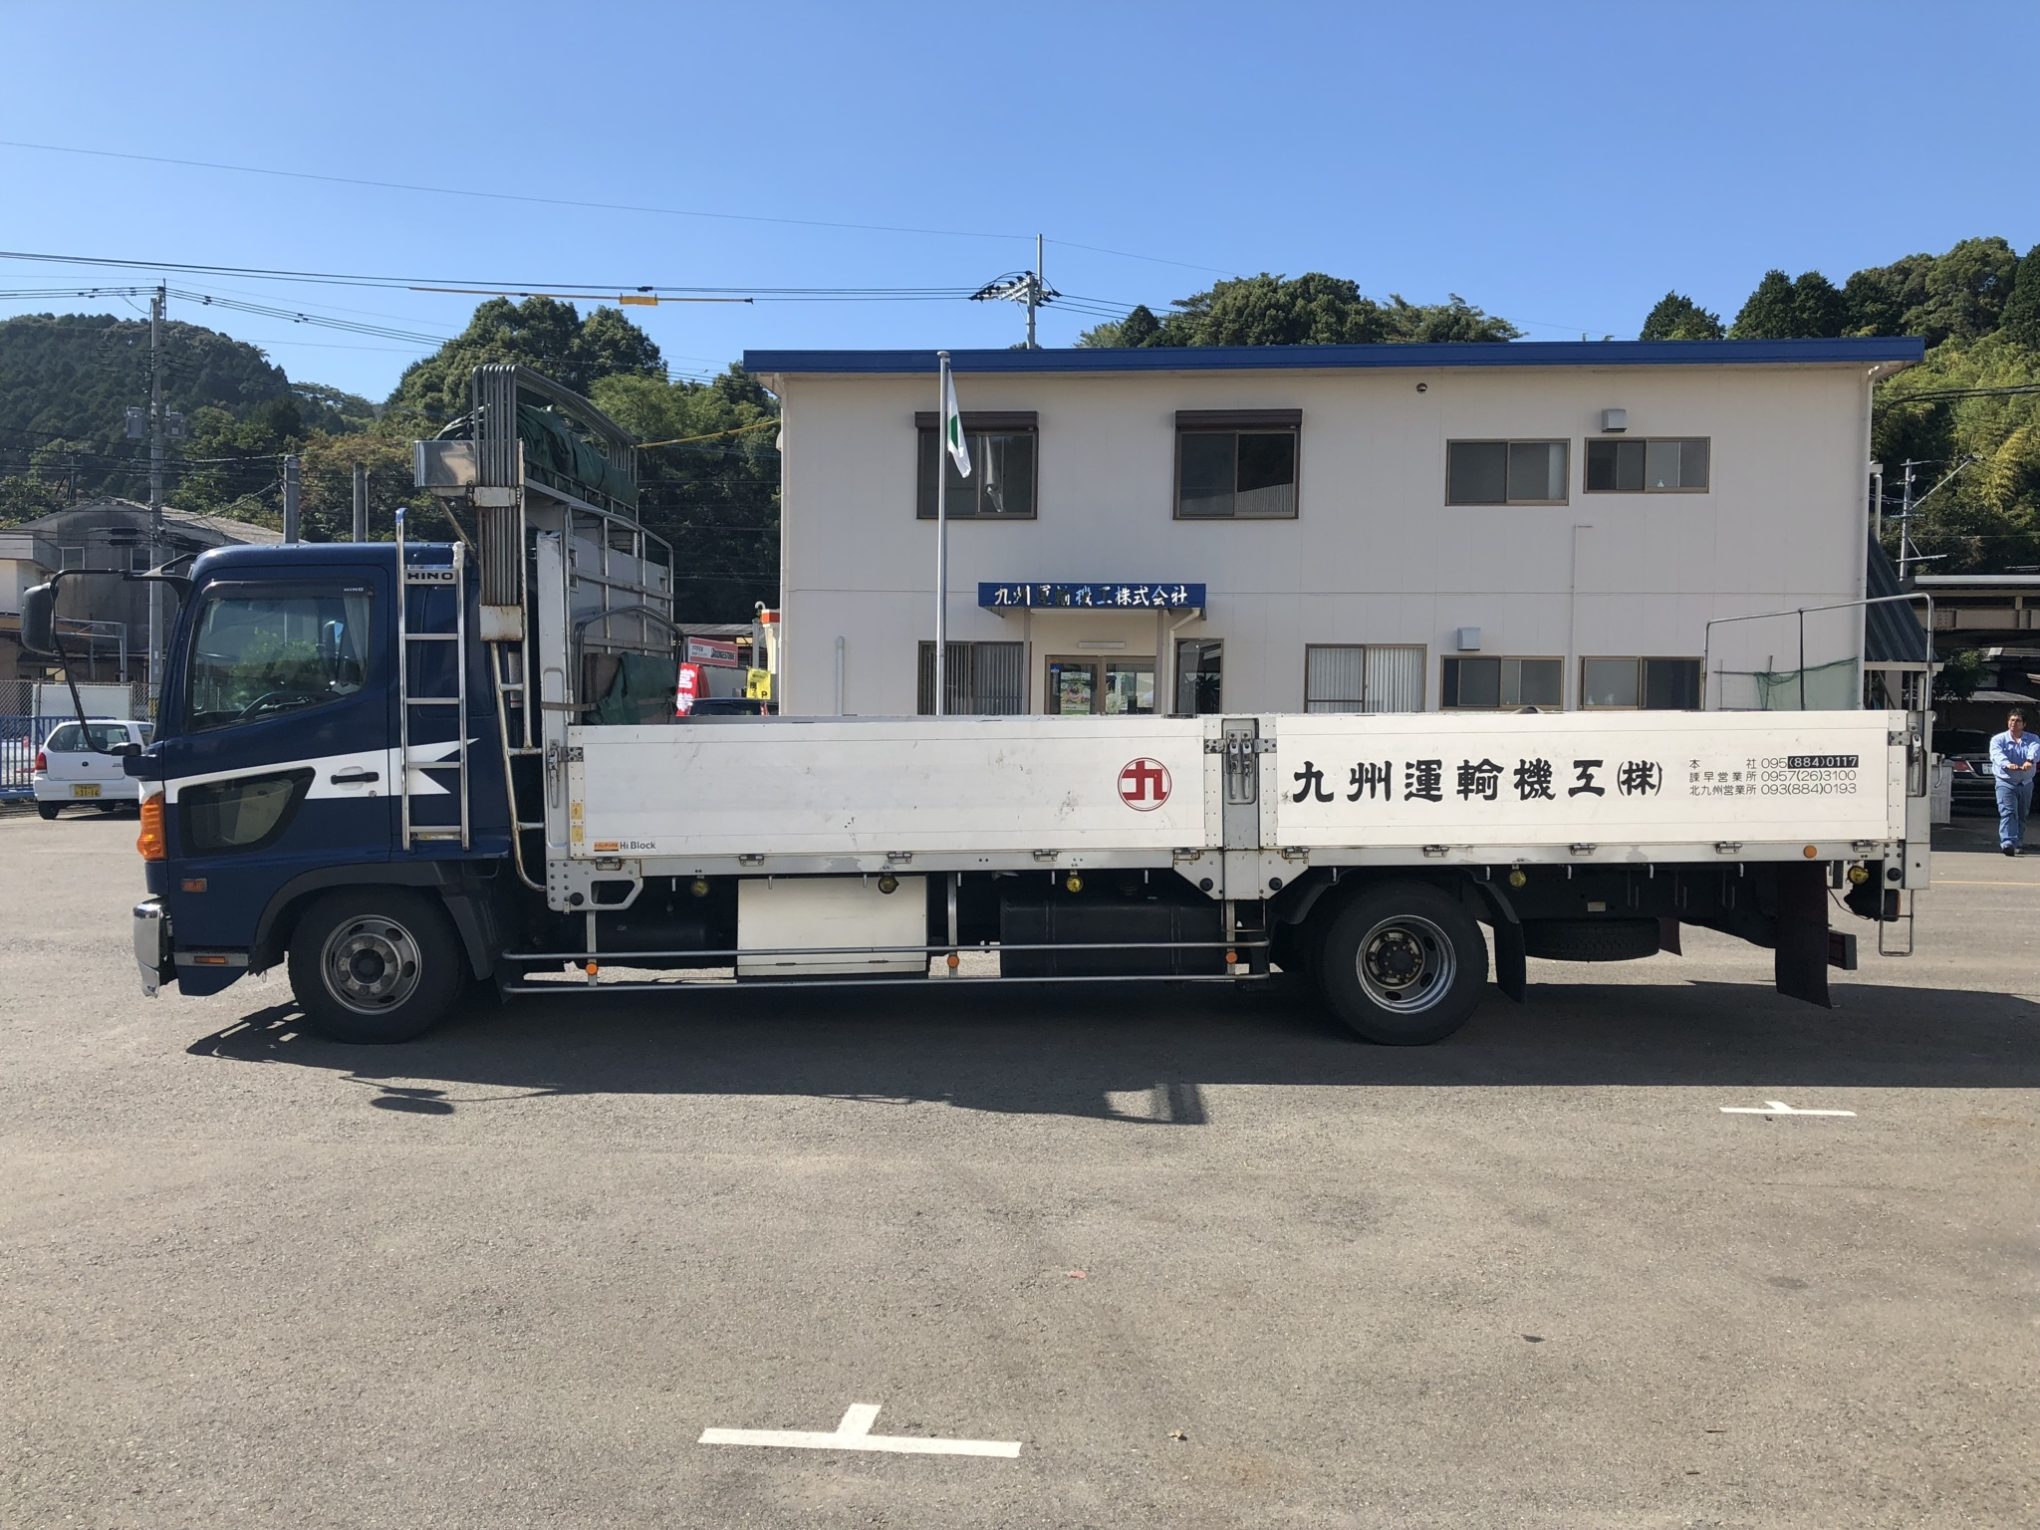 4t平ボディ車 フルワイド 九州運輸機工株式会社 公式ホームページ